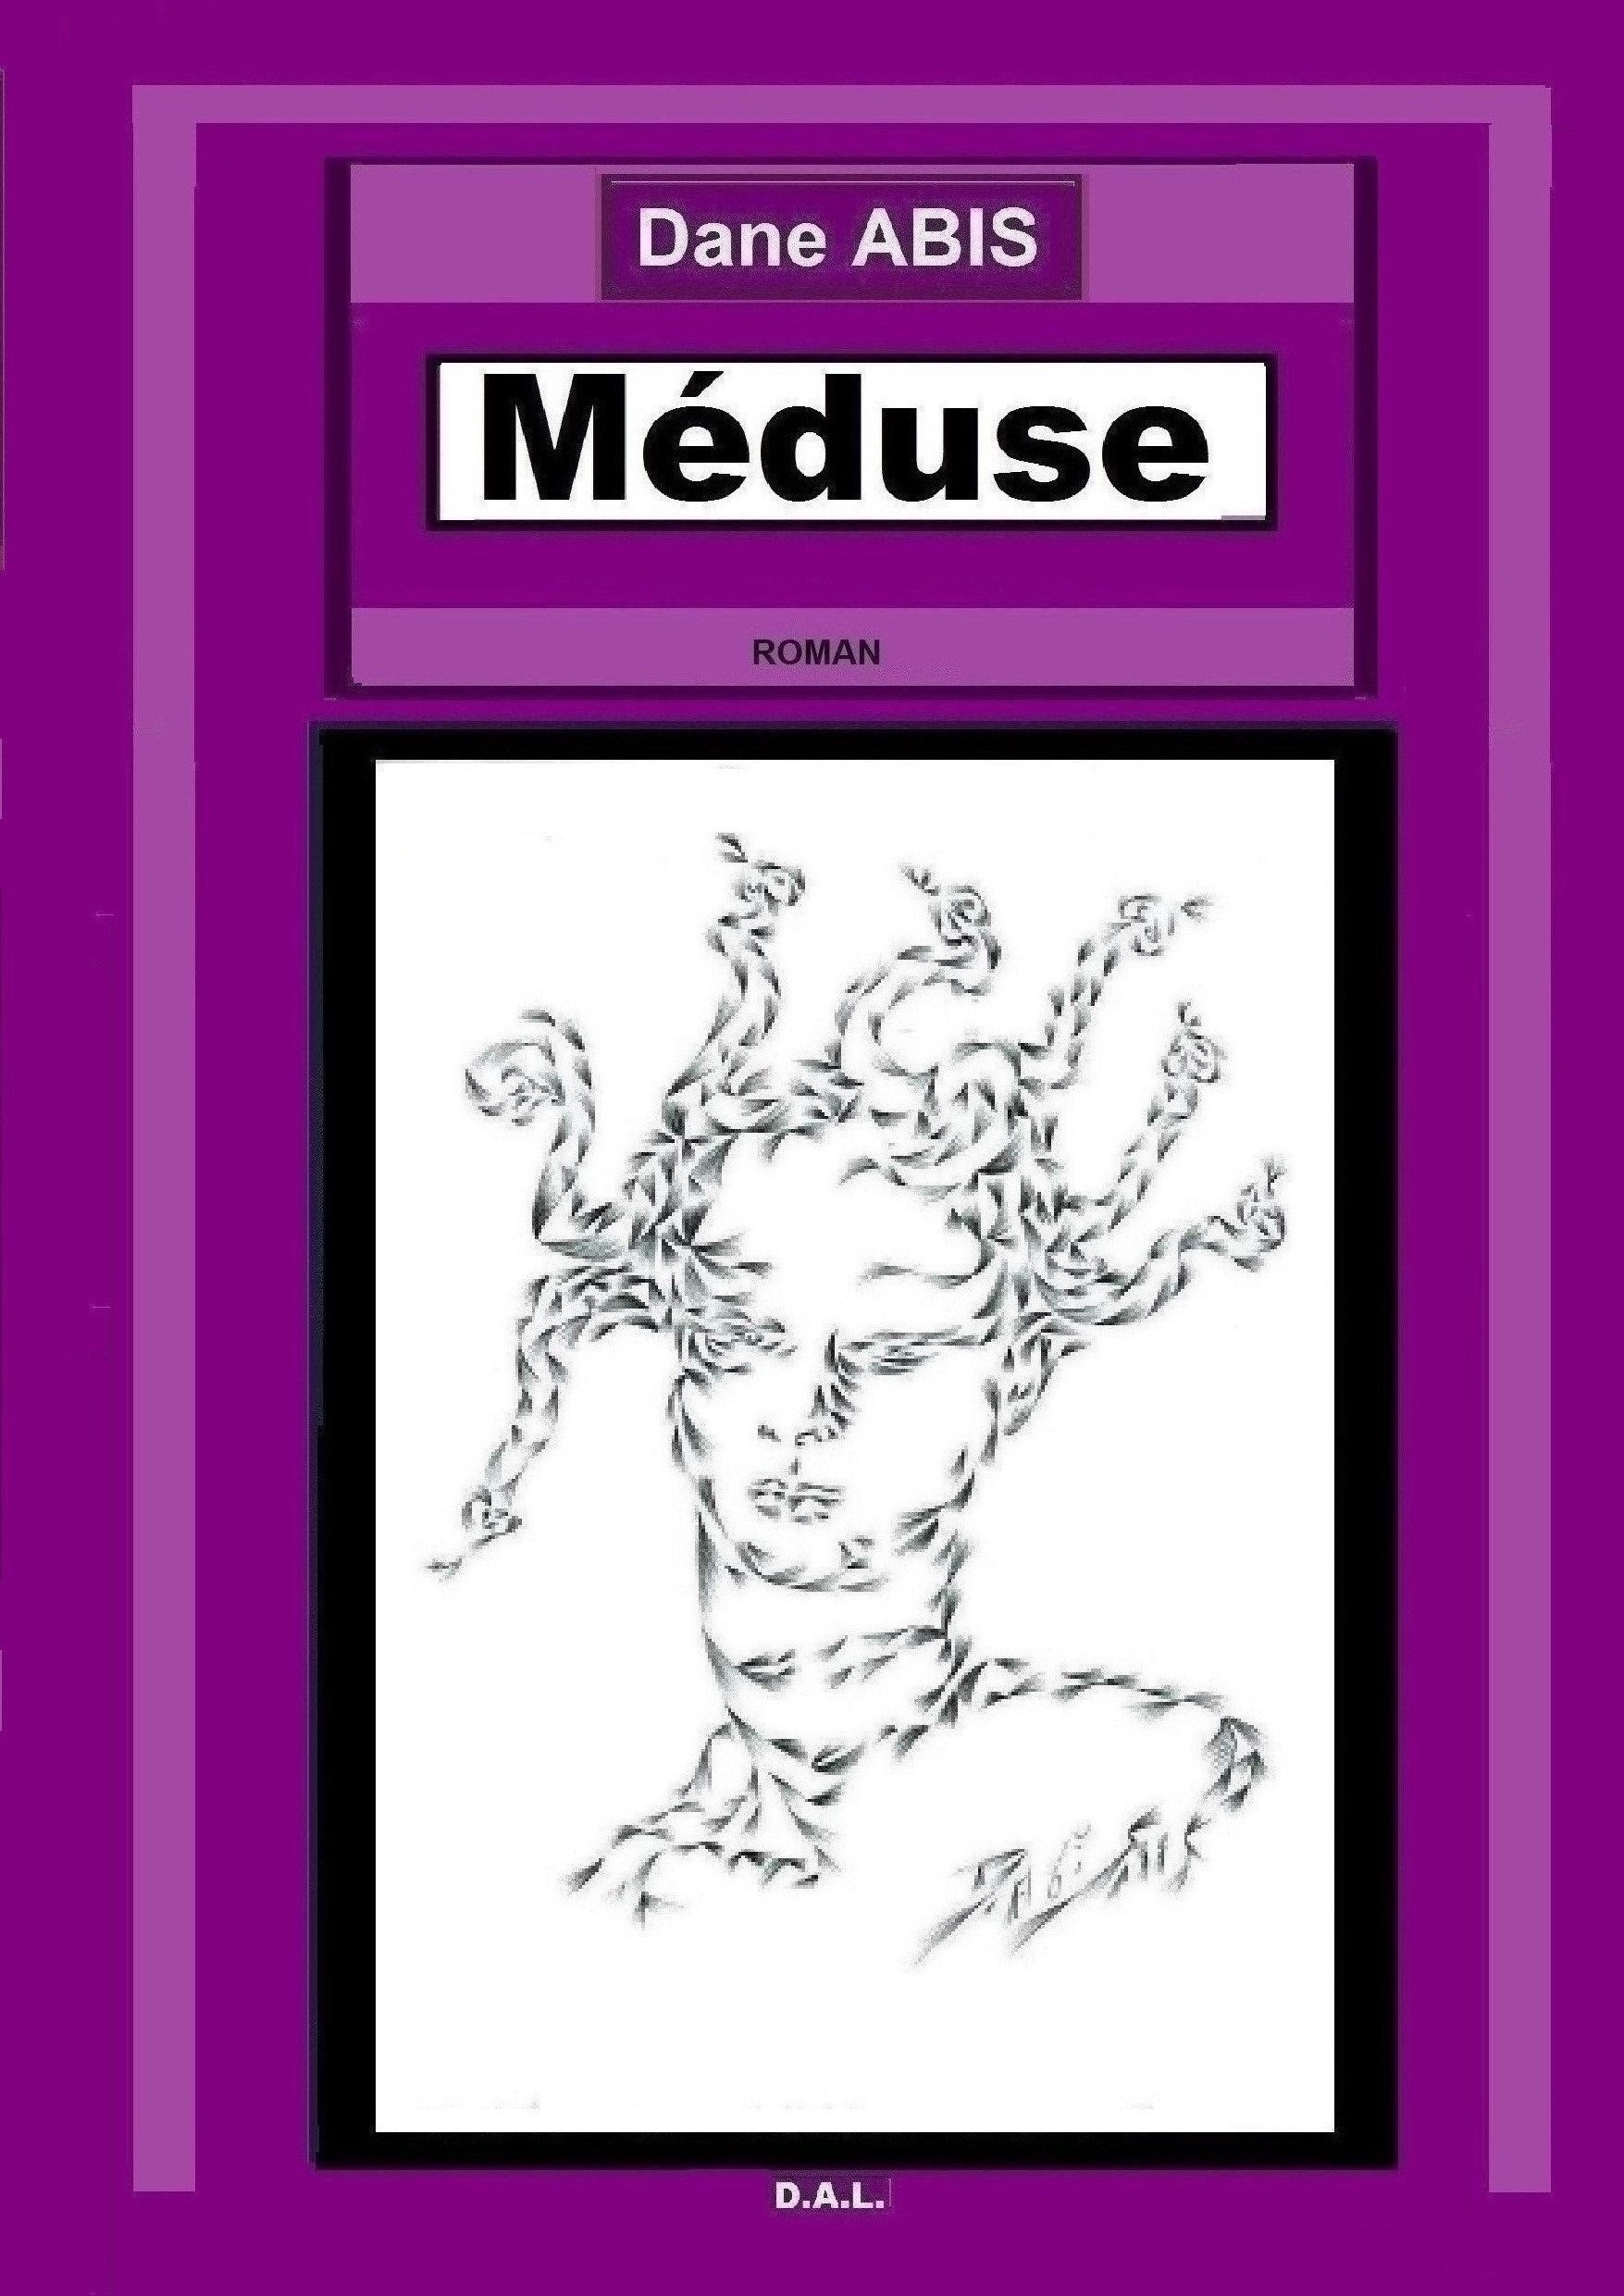 MEDUSE